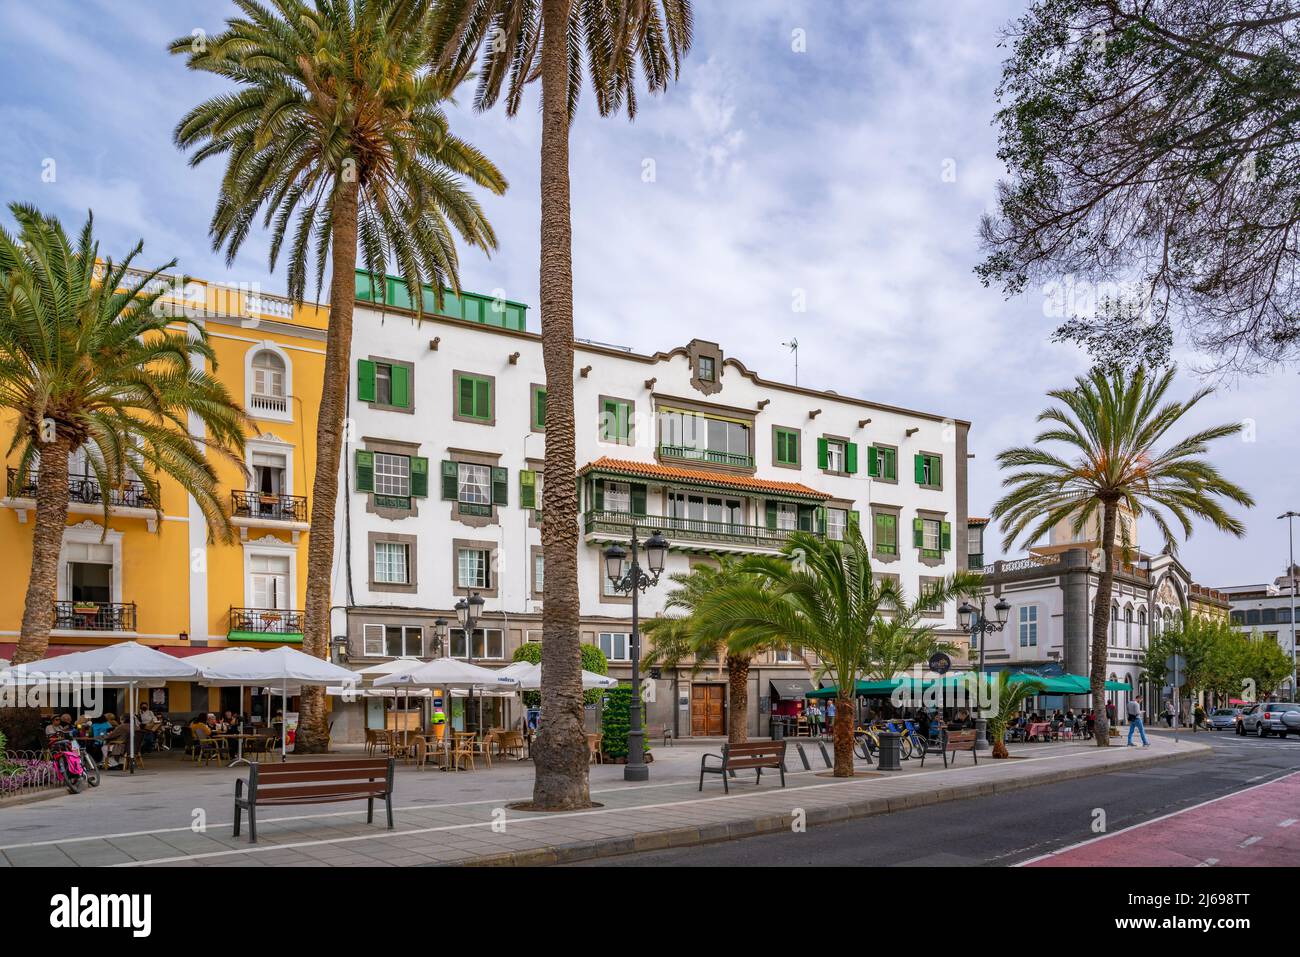 Blick auf die reich verzierte und farbenfrohe Architektur an der Plaza de Cairasco, Las Palmas, Gran Canaria, Kanarische Inseln, Spanien, Atlantik, Europa Stockfoto